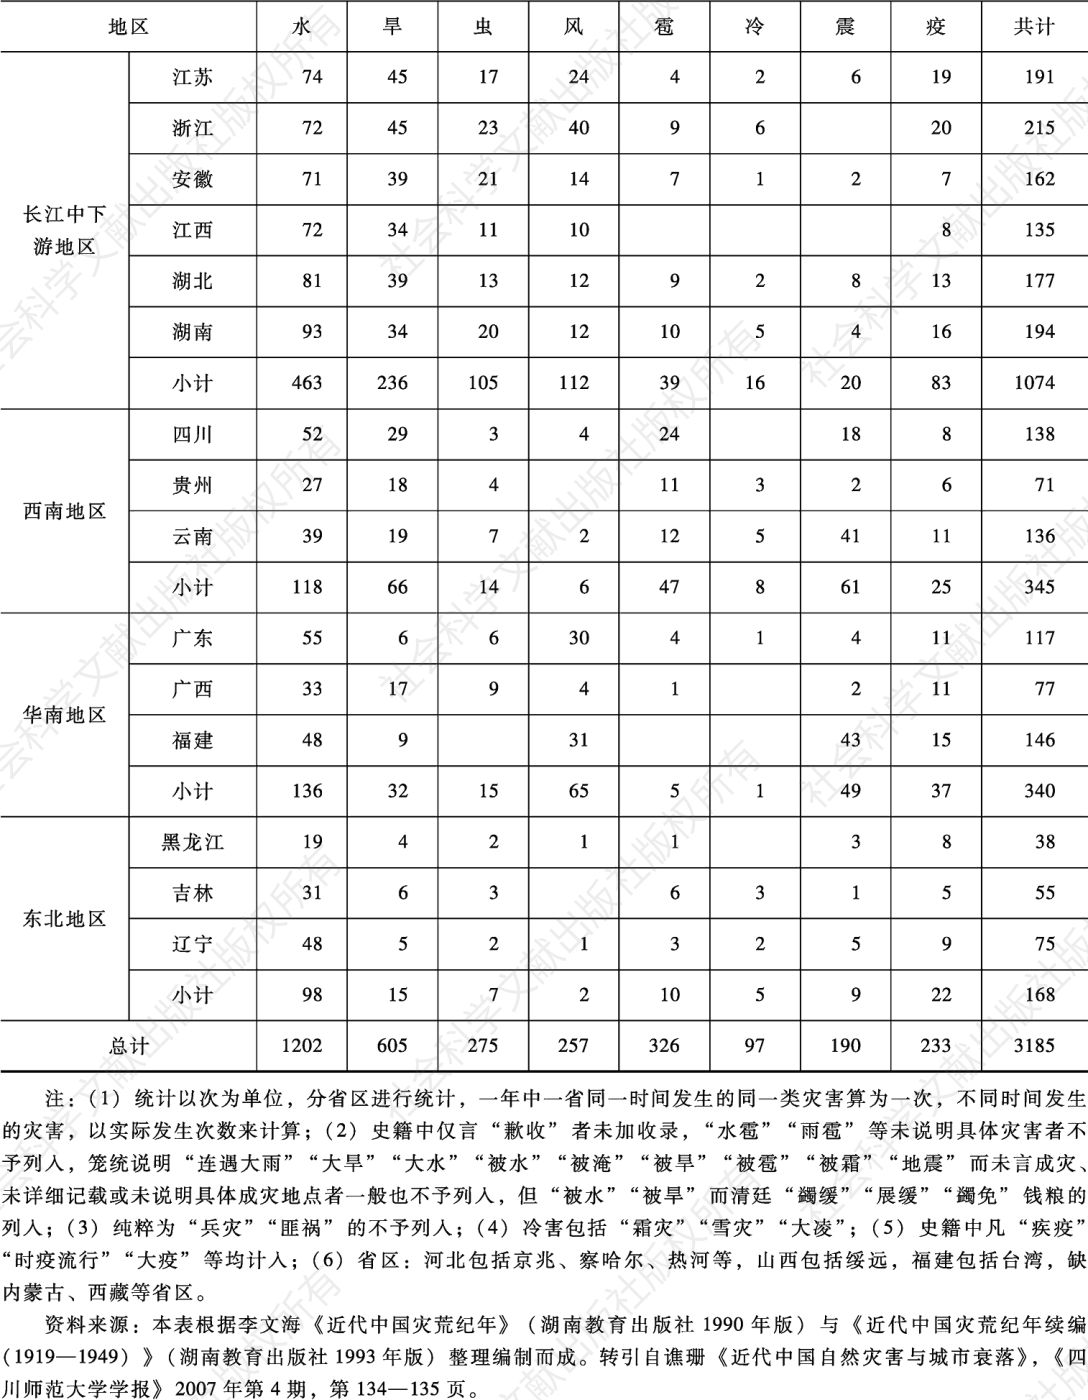 表7-2 1840—1949年中国各省区灾害数量统计-续表